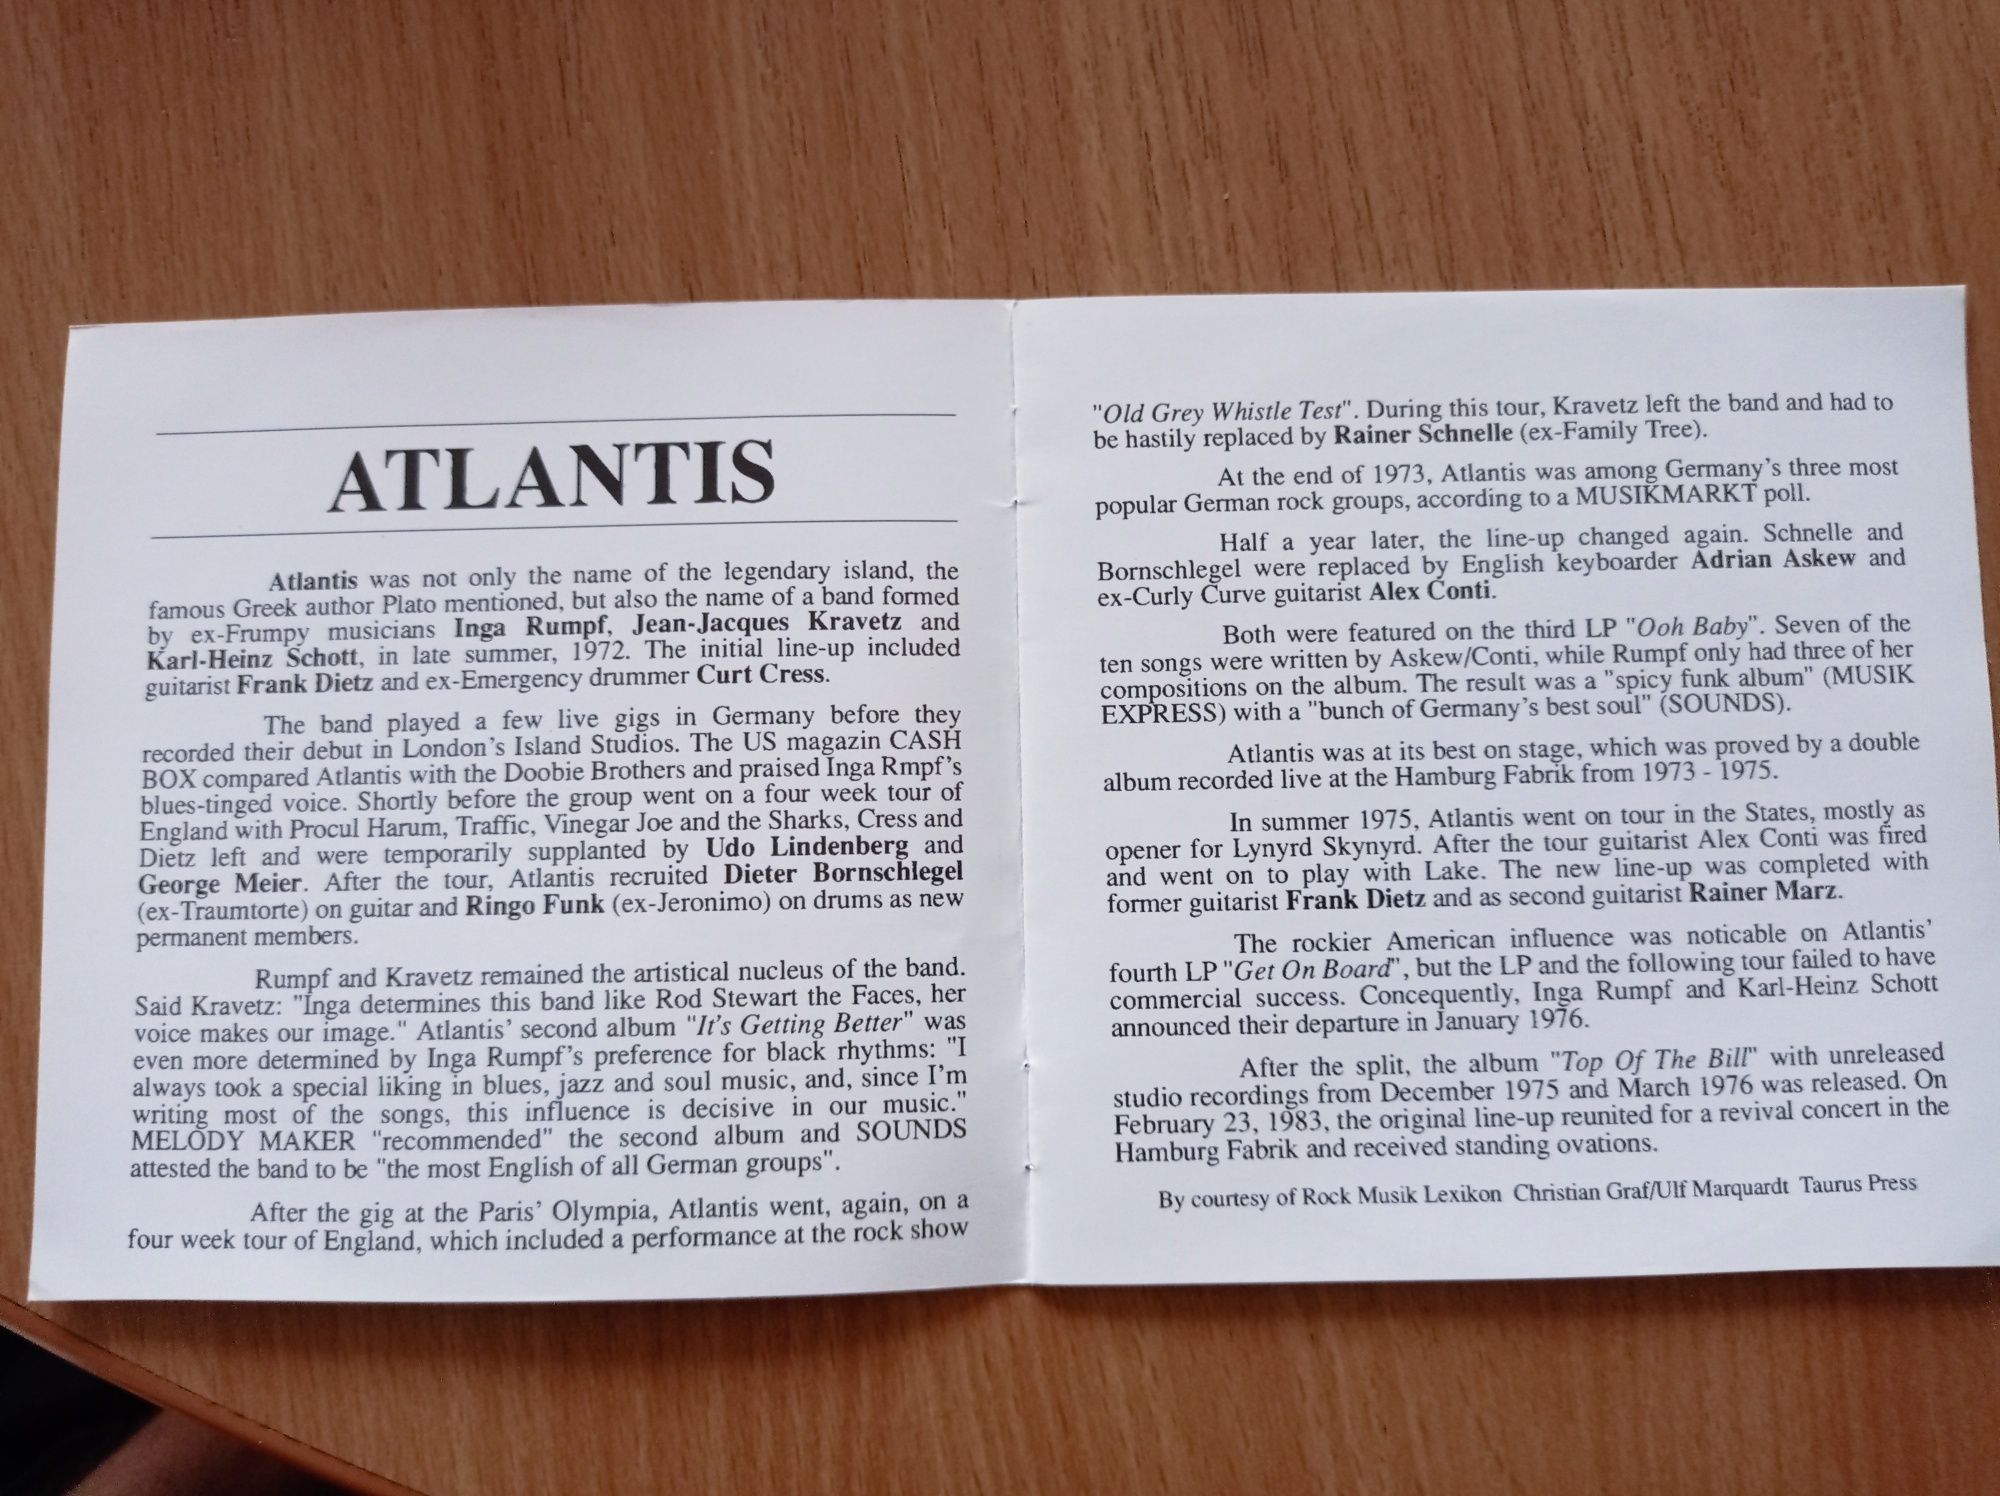 Atlantis - Antlantis